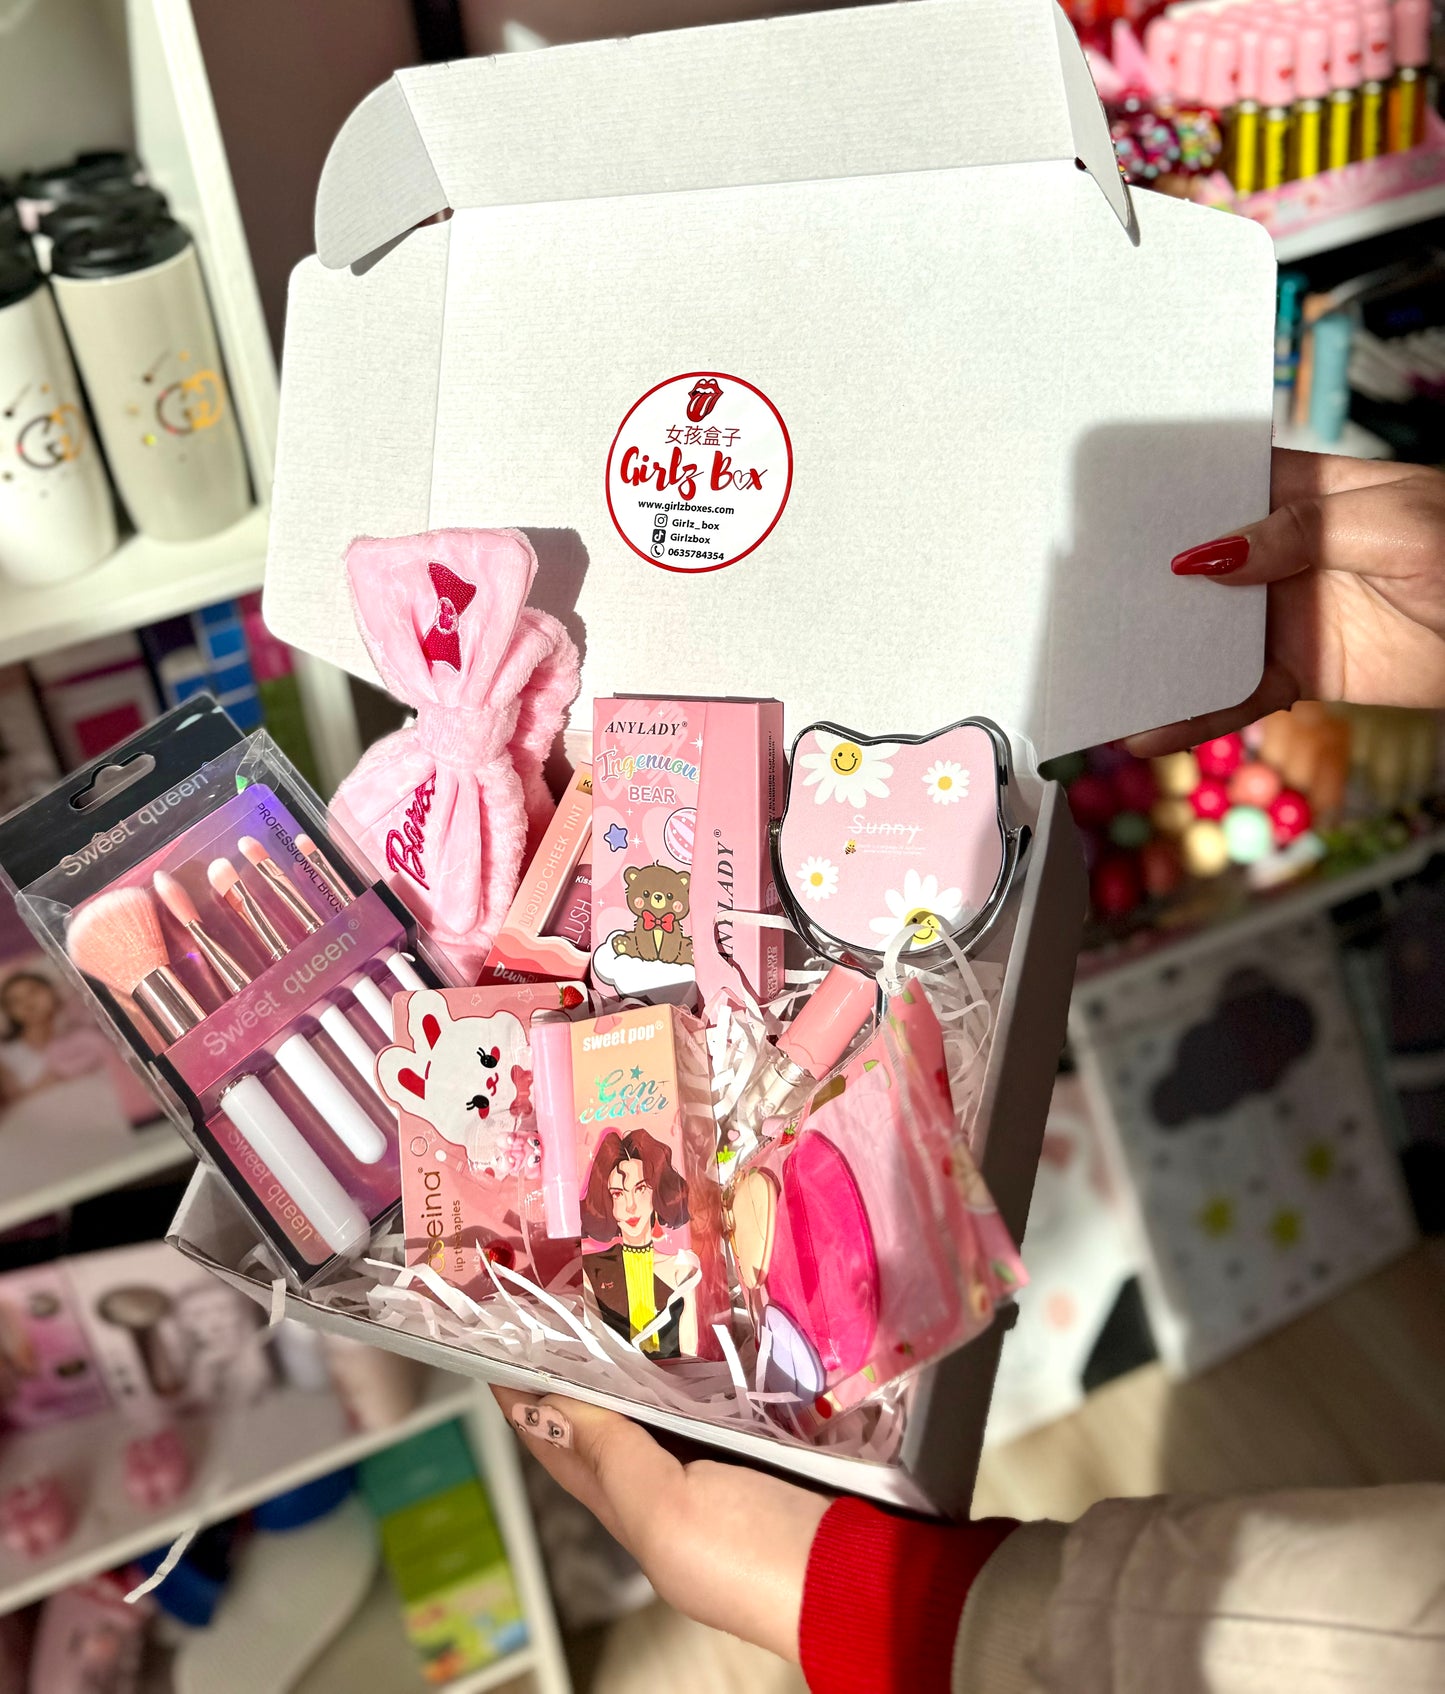 Pink flower box barbie - Girlzbox